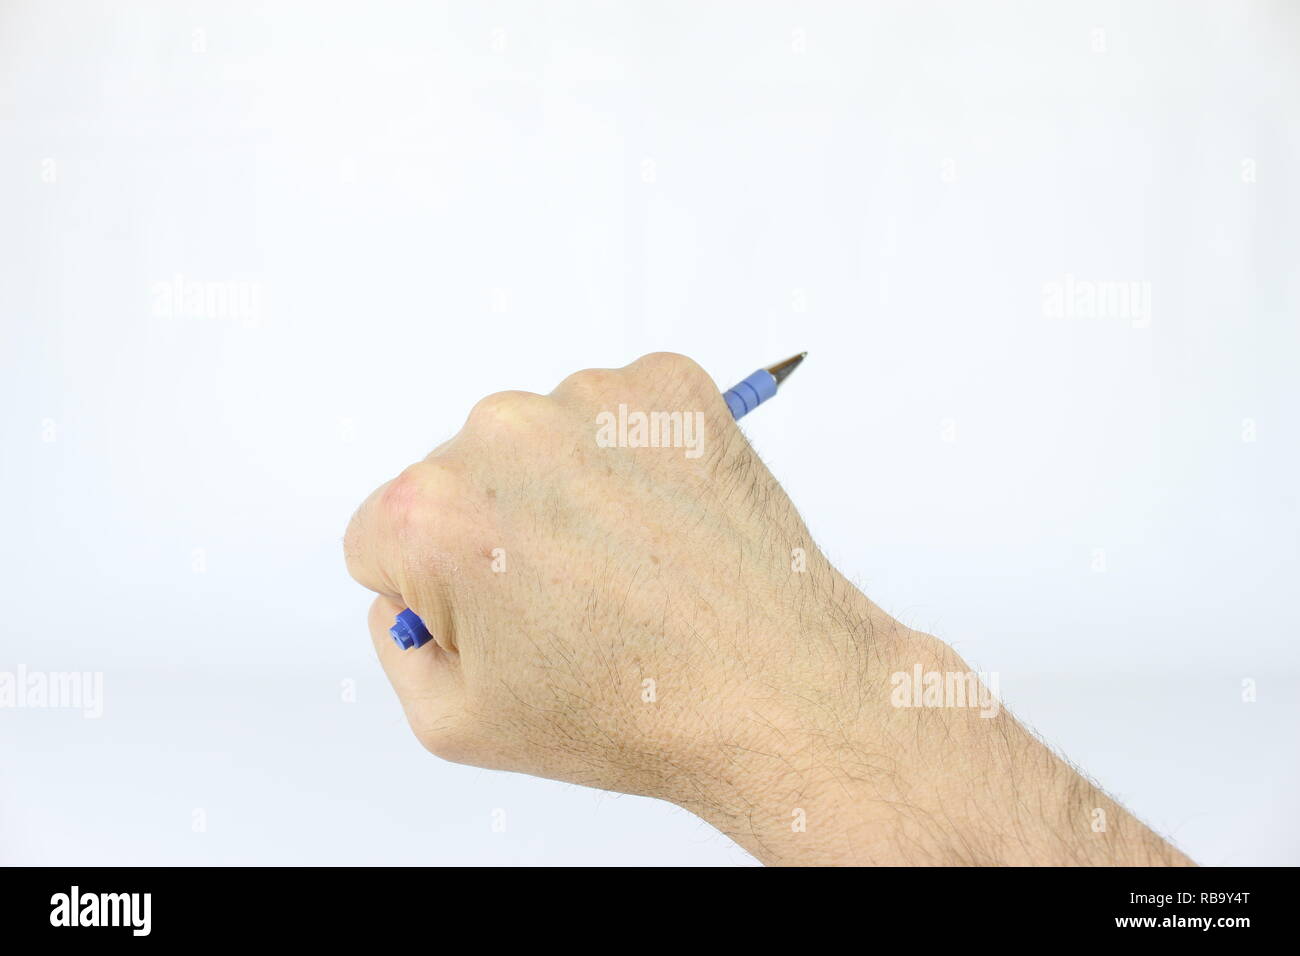 La main droite, d'un homme, est titulaire d'un objet commun, un stylo. Banque D'Images